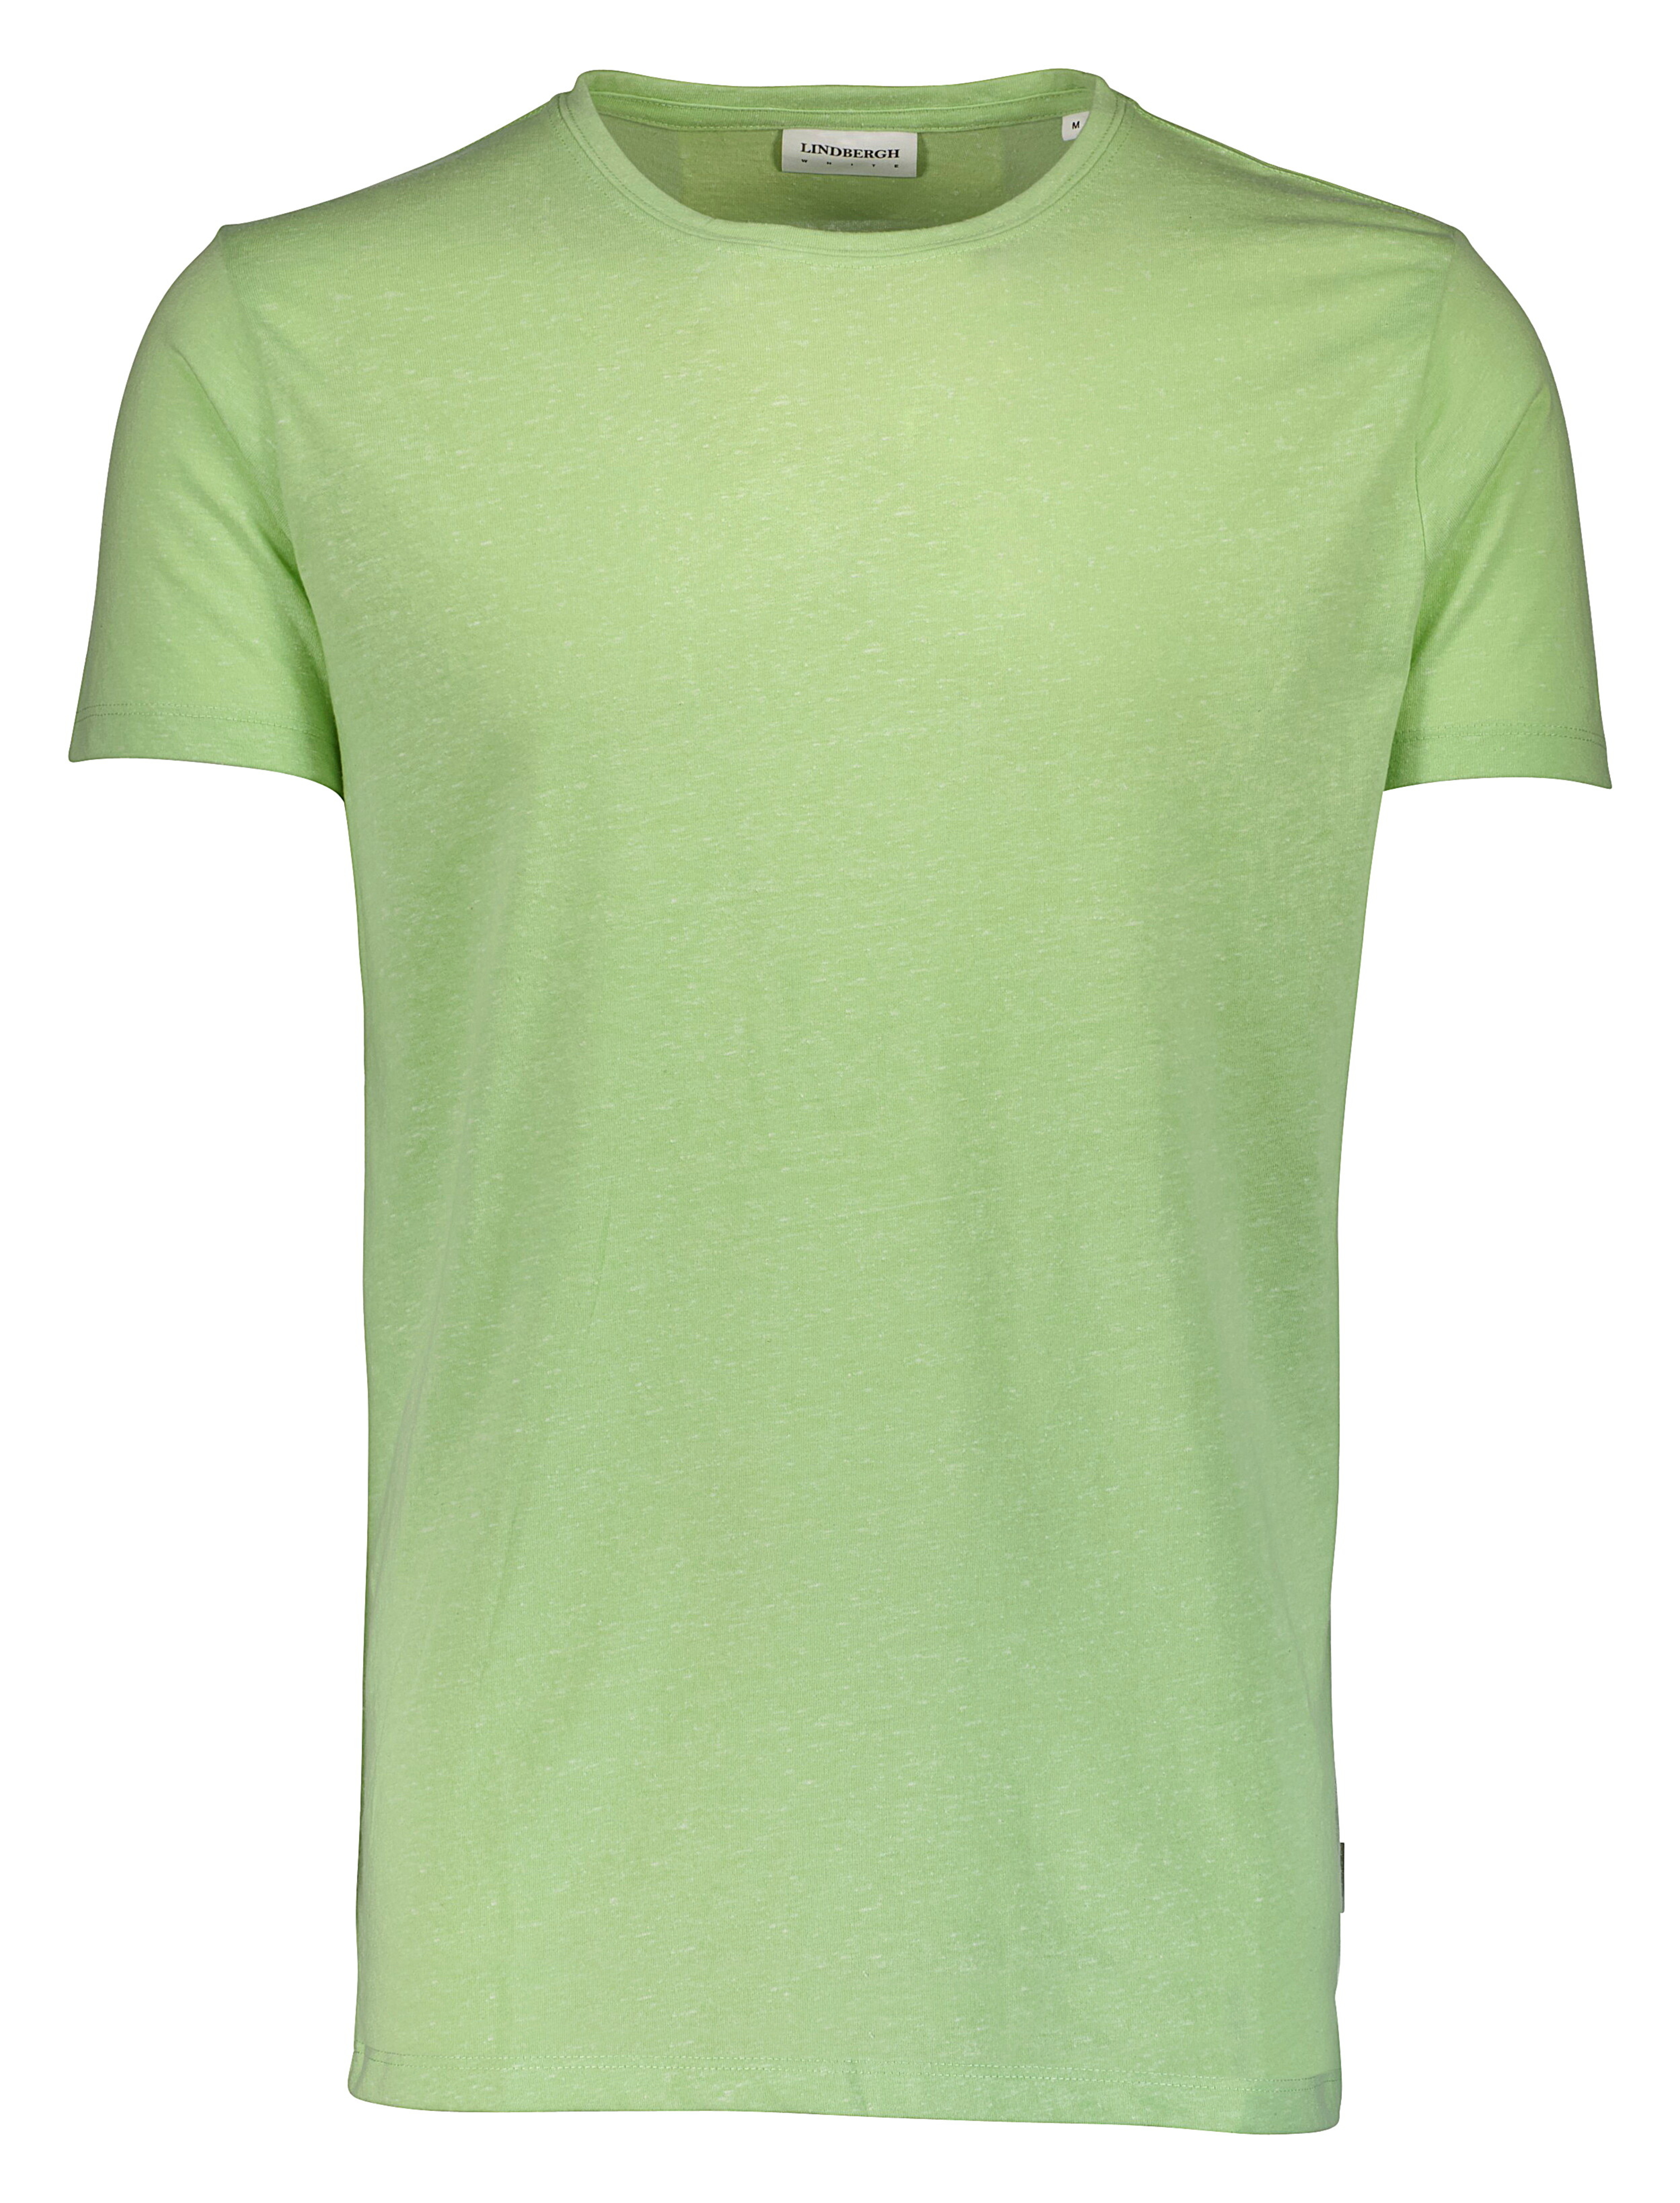 Lindbergh T-Shirt grün / lt green